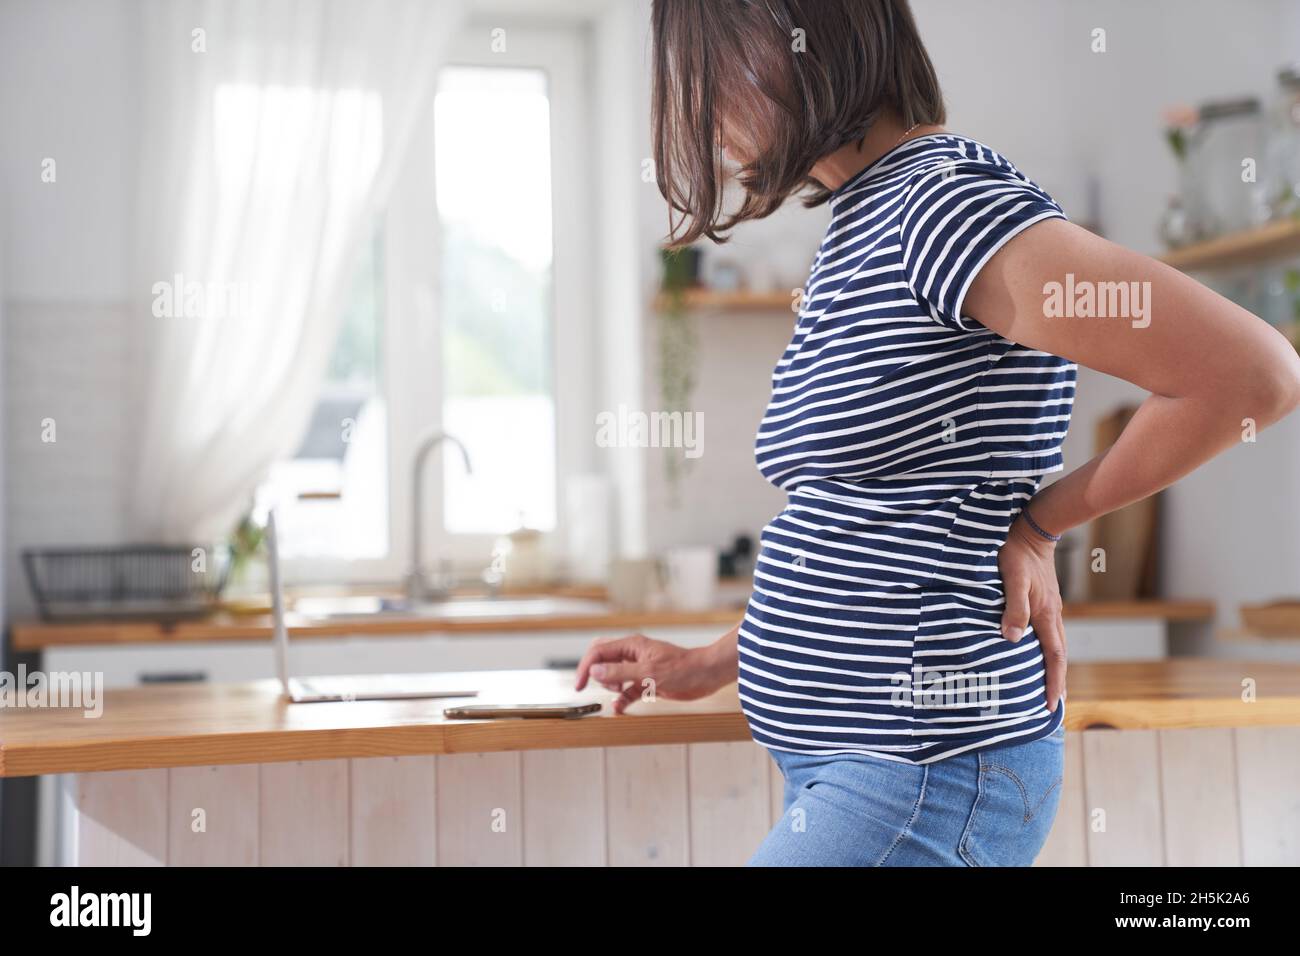 Vientre de una mujer embarazada que sostiene una mano bajo el